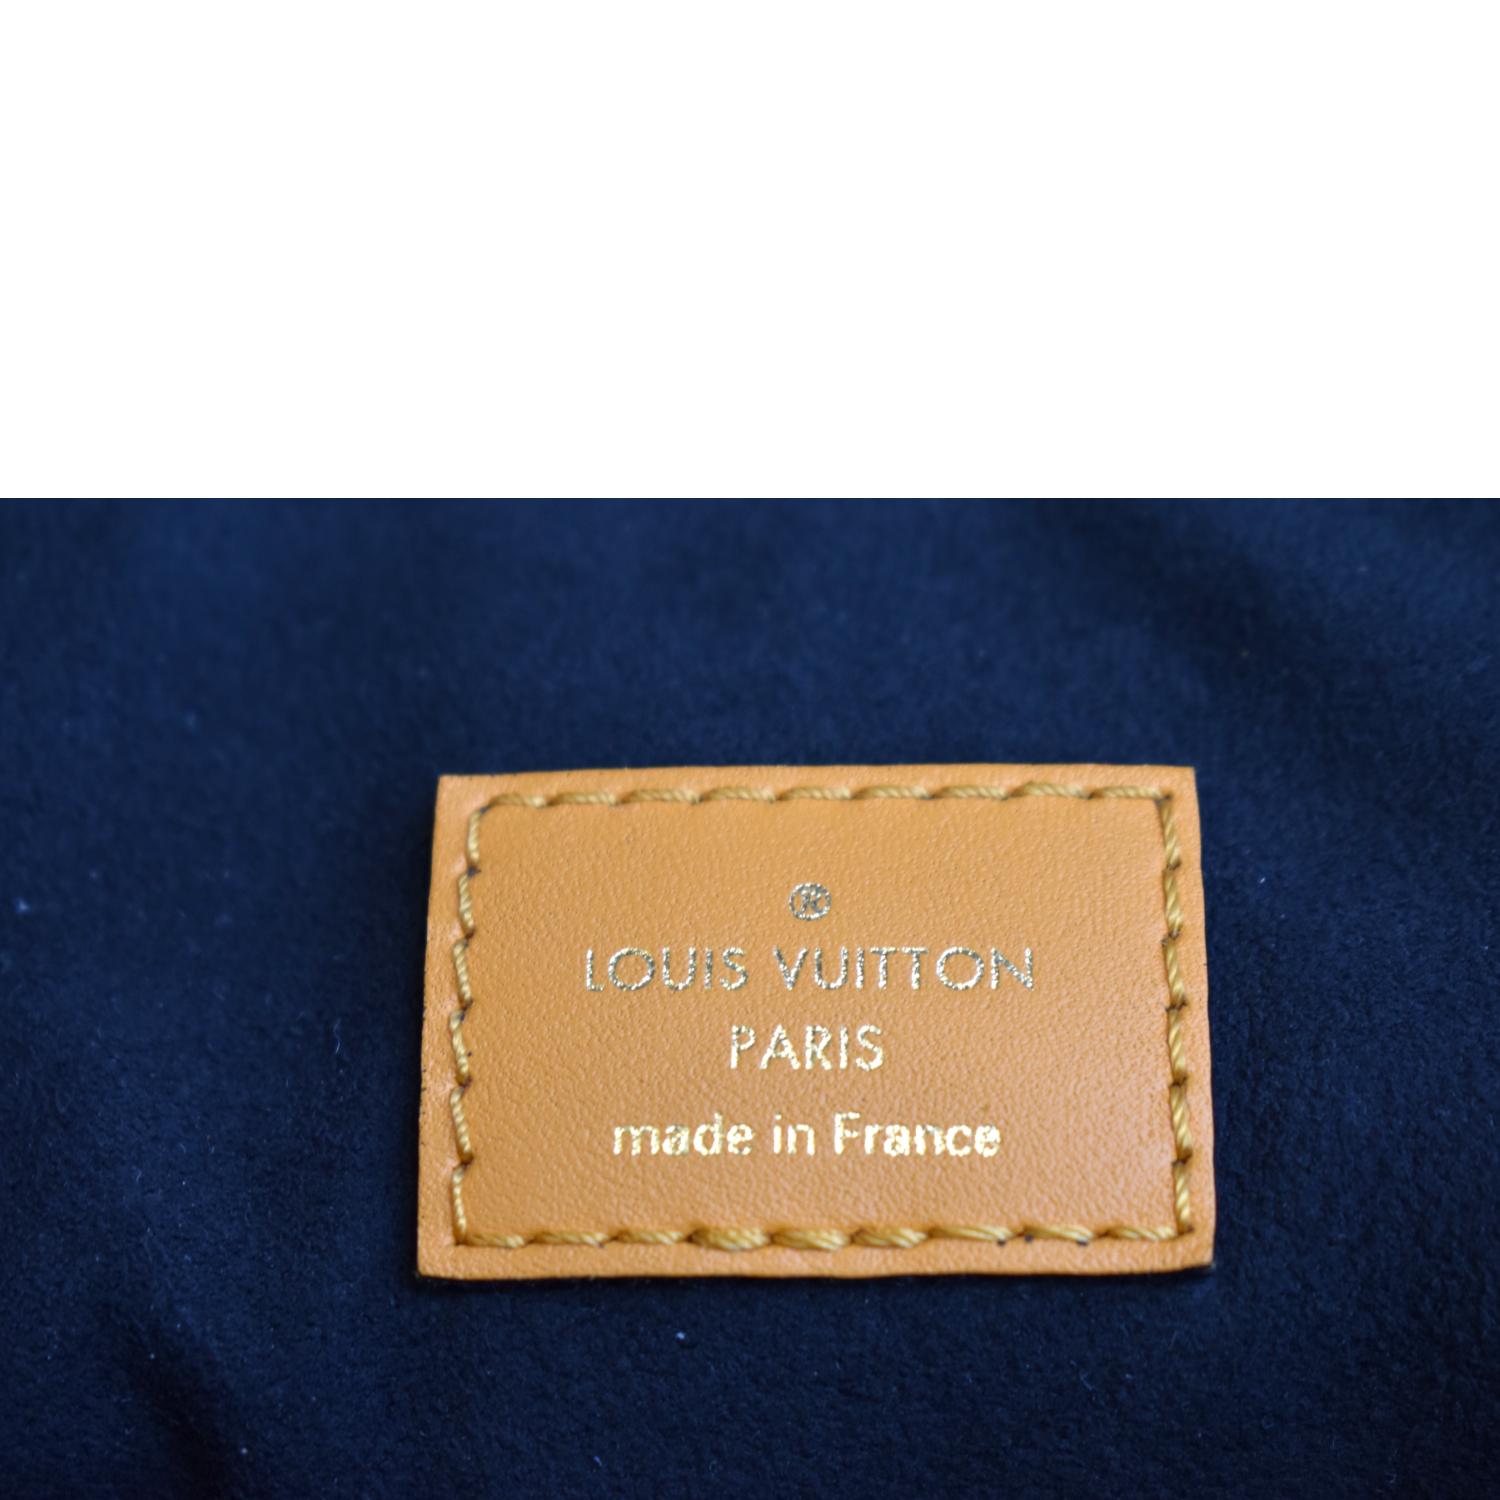 Louis Vuitton Damier Ebene Maida - Brown Hobos, Handbags